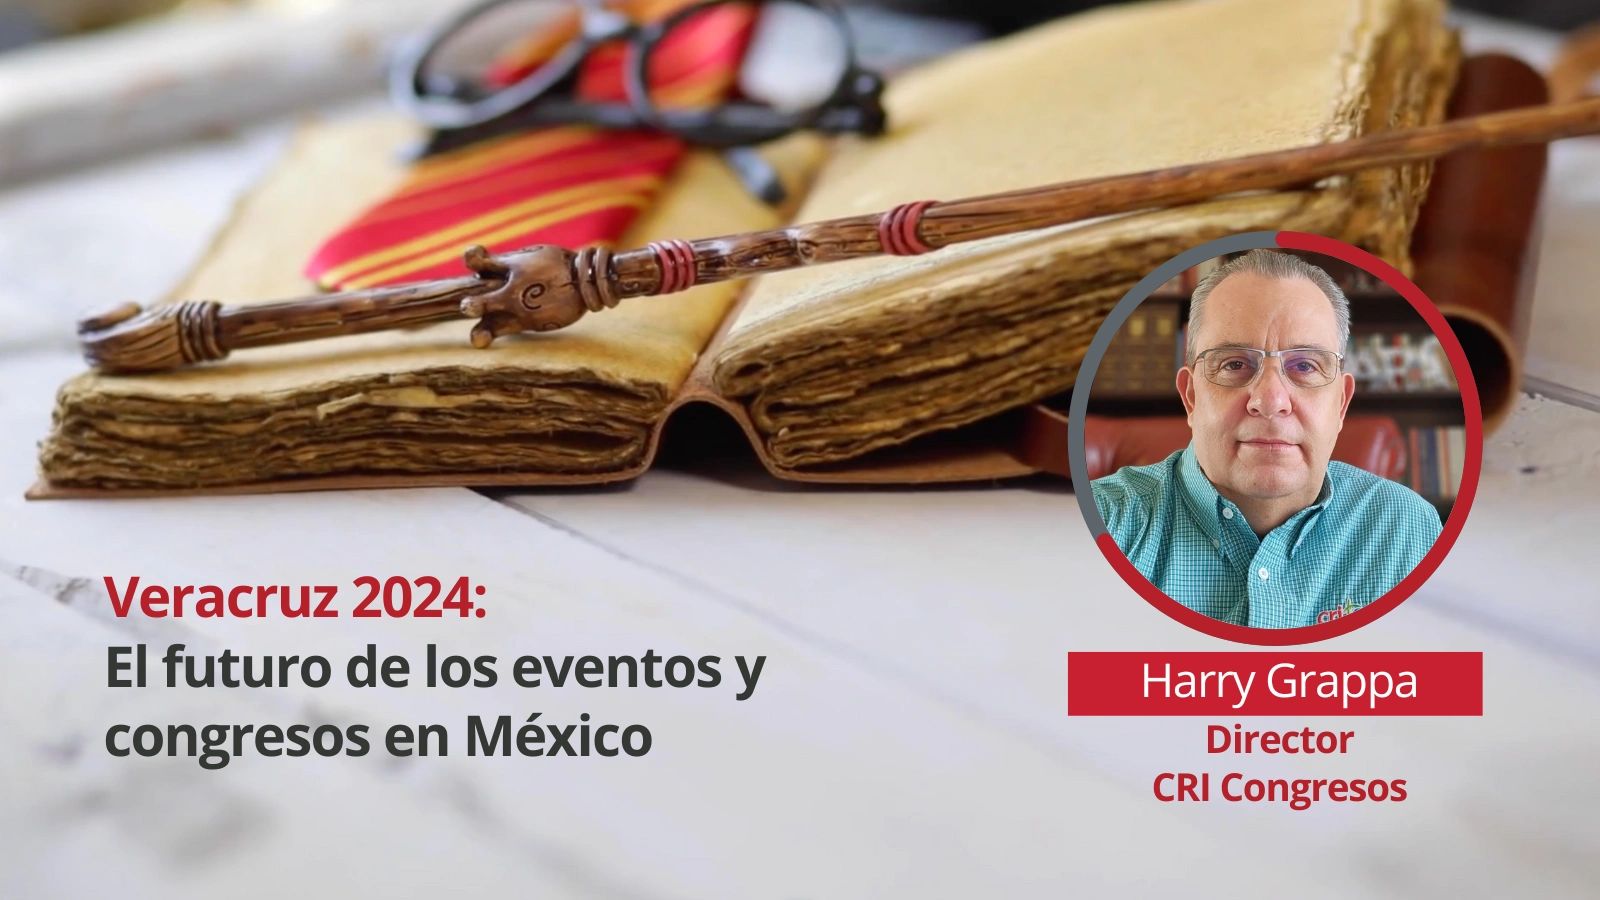 Veracruz 2024 El futuro de los eventos y congresos en México